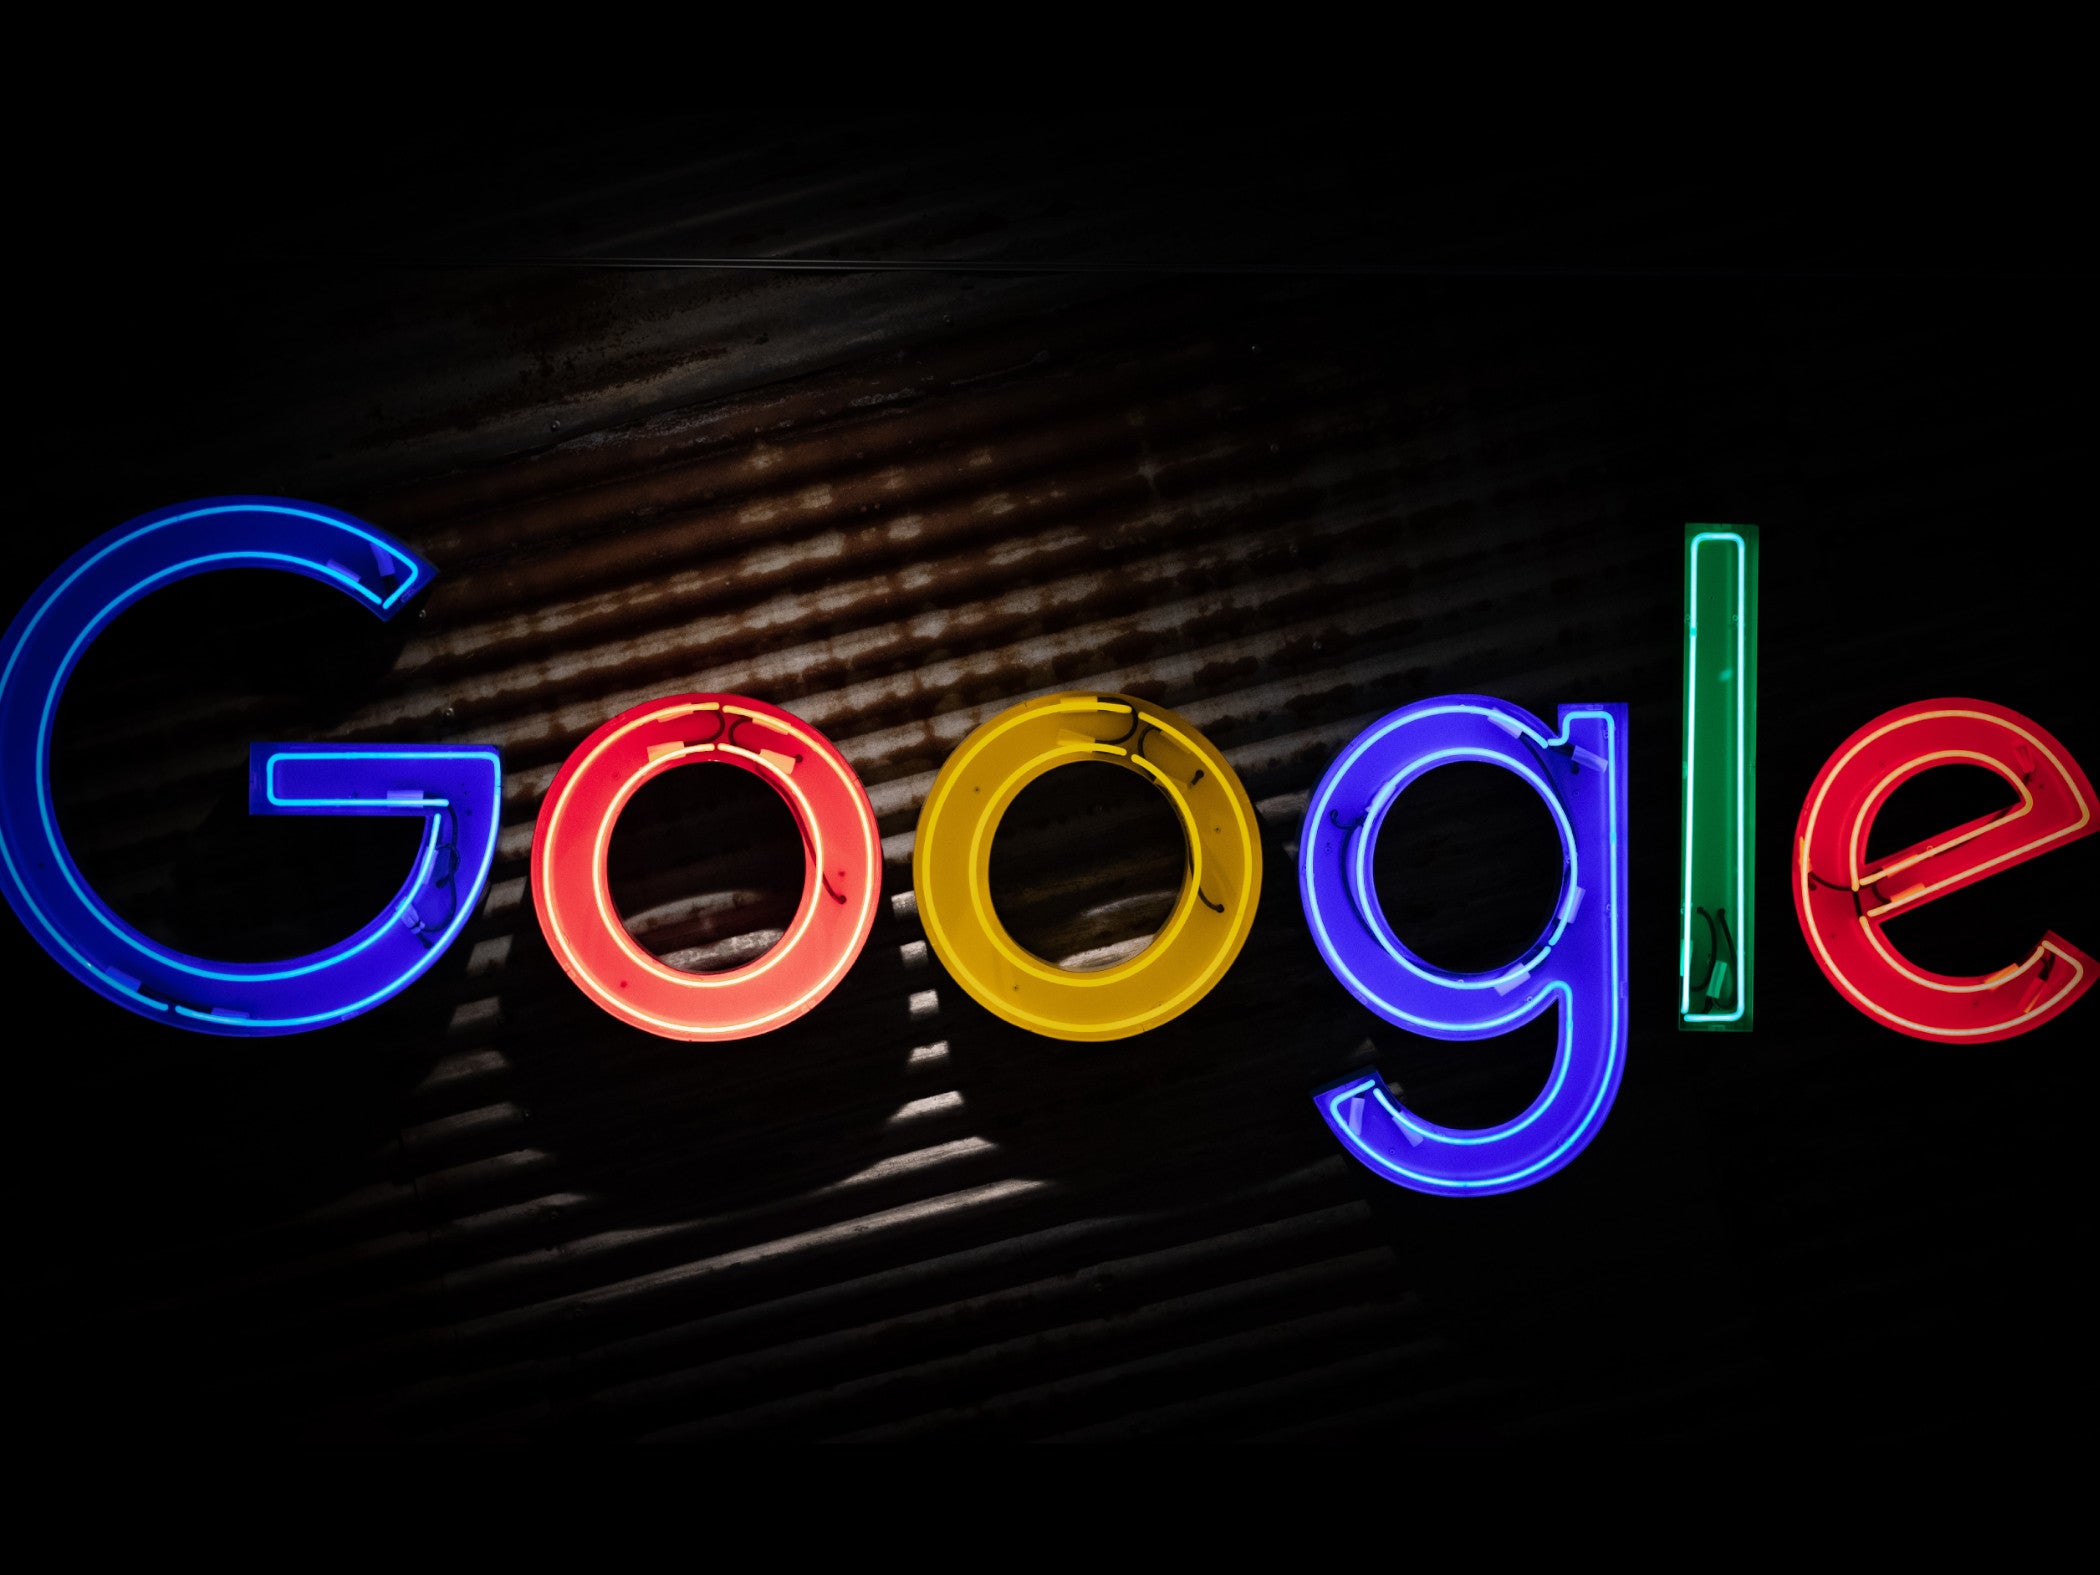 #Google späht Nutzer aus: Jetzt kommt die herbe Quittung